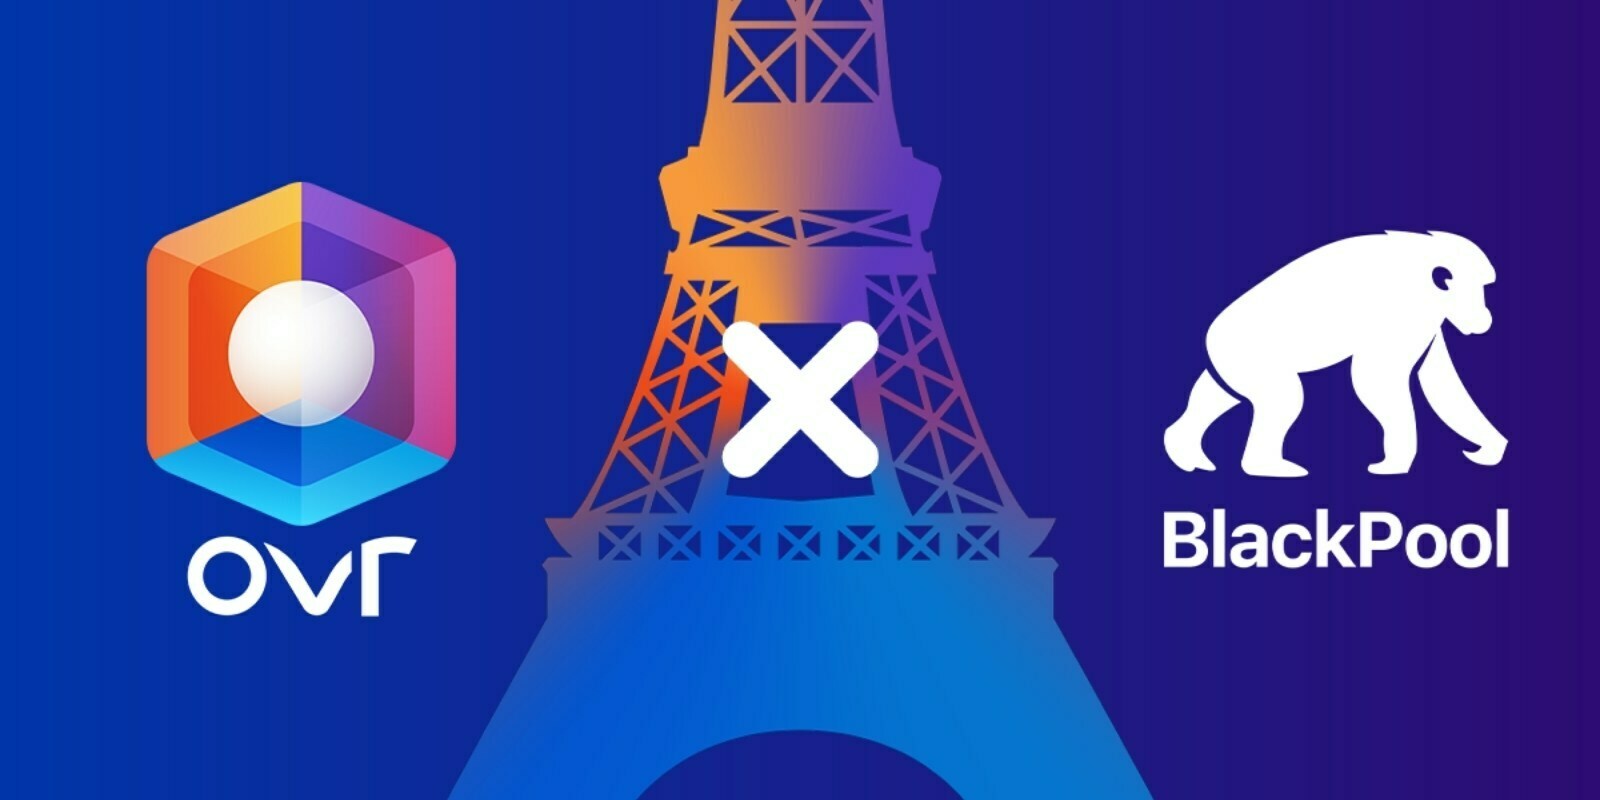 Le fonds décentralisé BlackPool acquiert la tour Eiffel dans le monde virtuel d'OVR